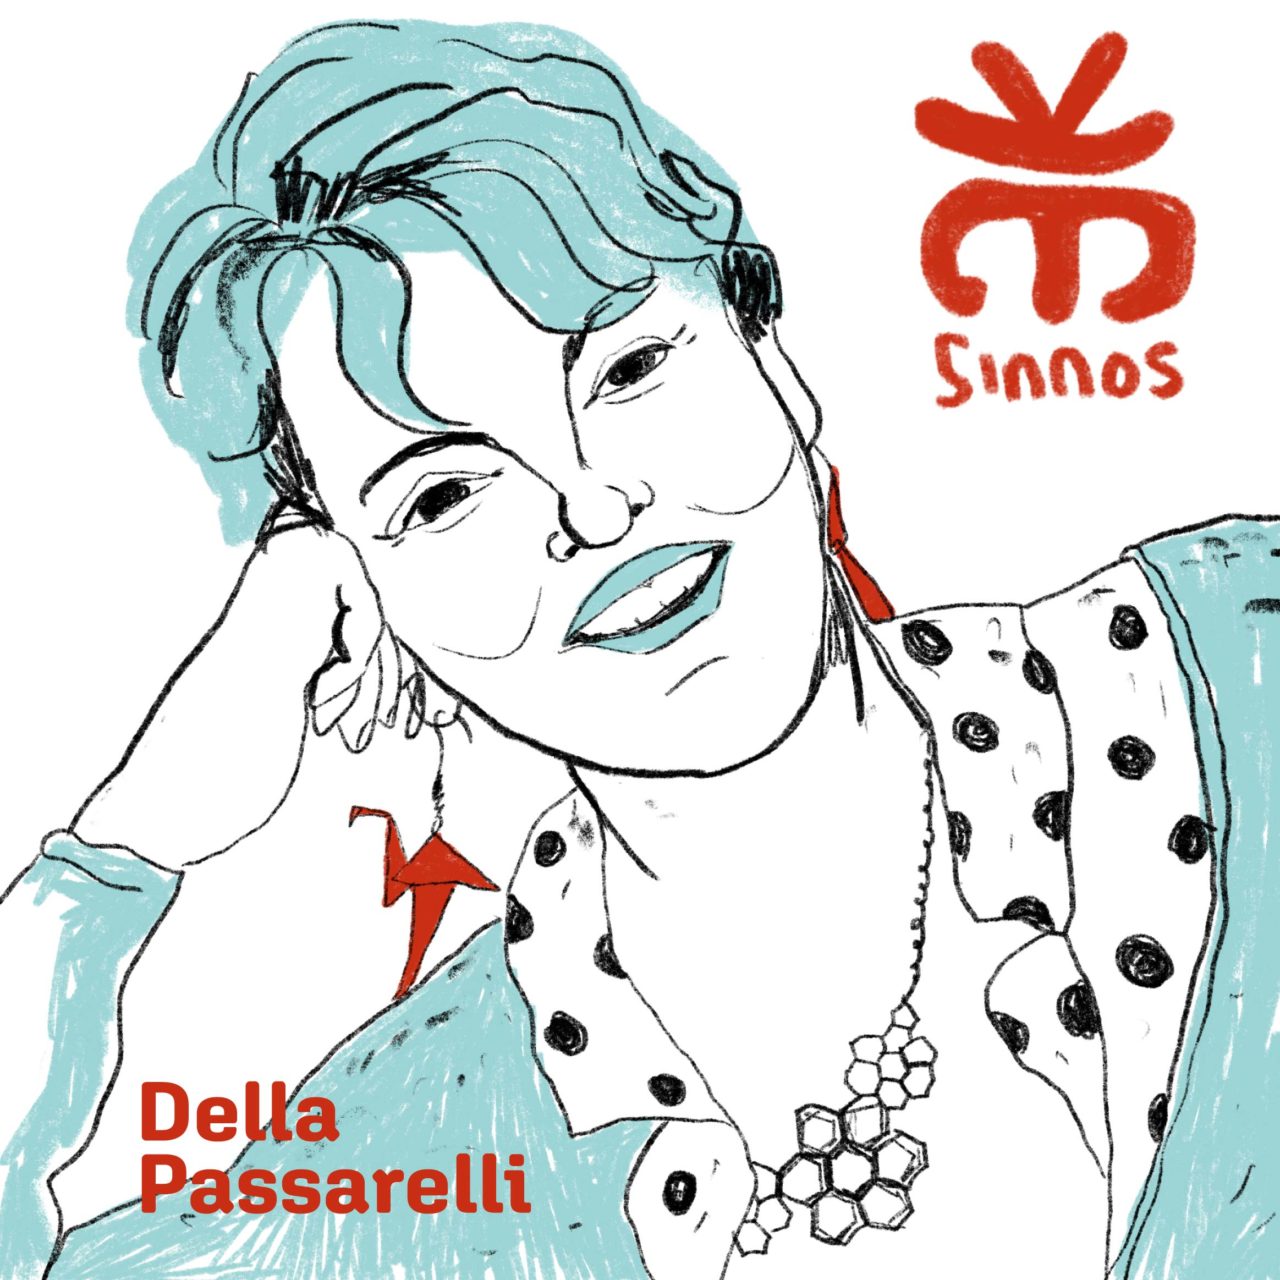 Della Passarelli - Sinnos Ed.